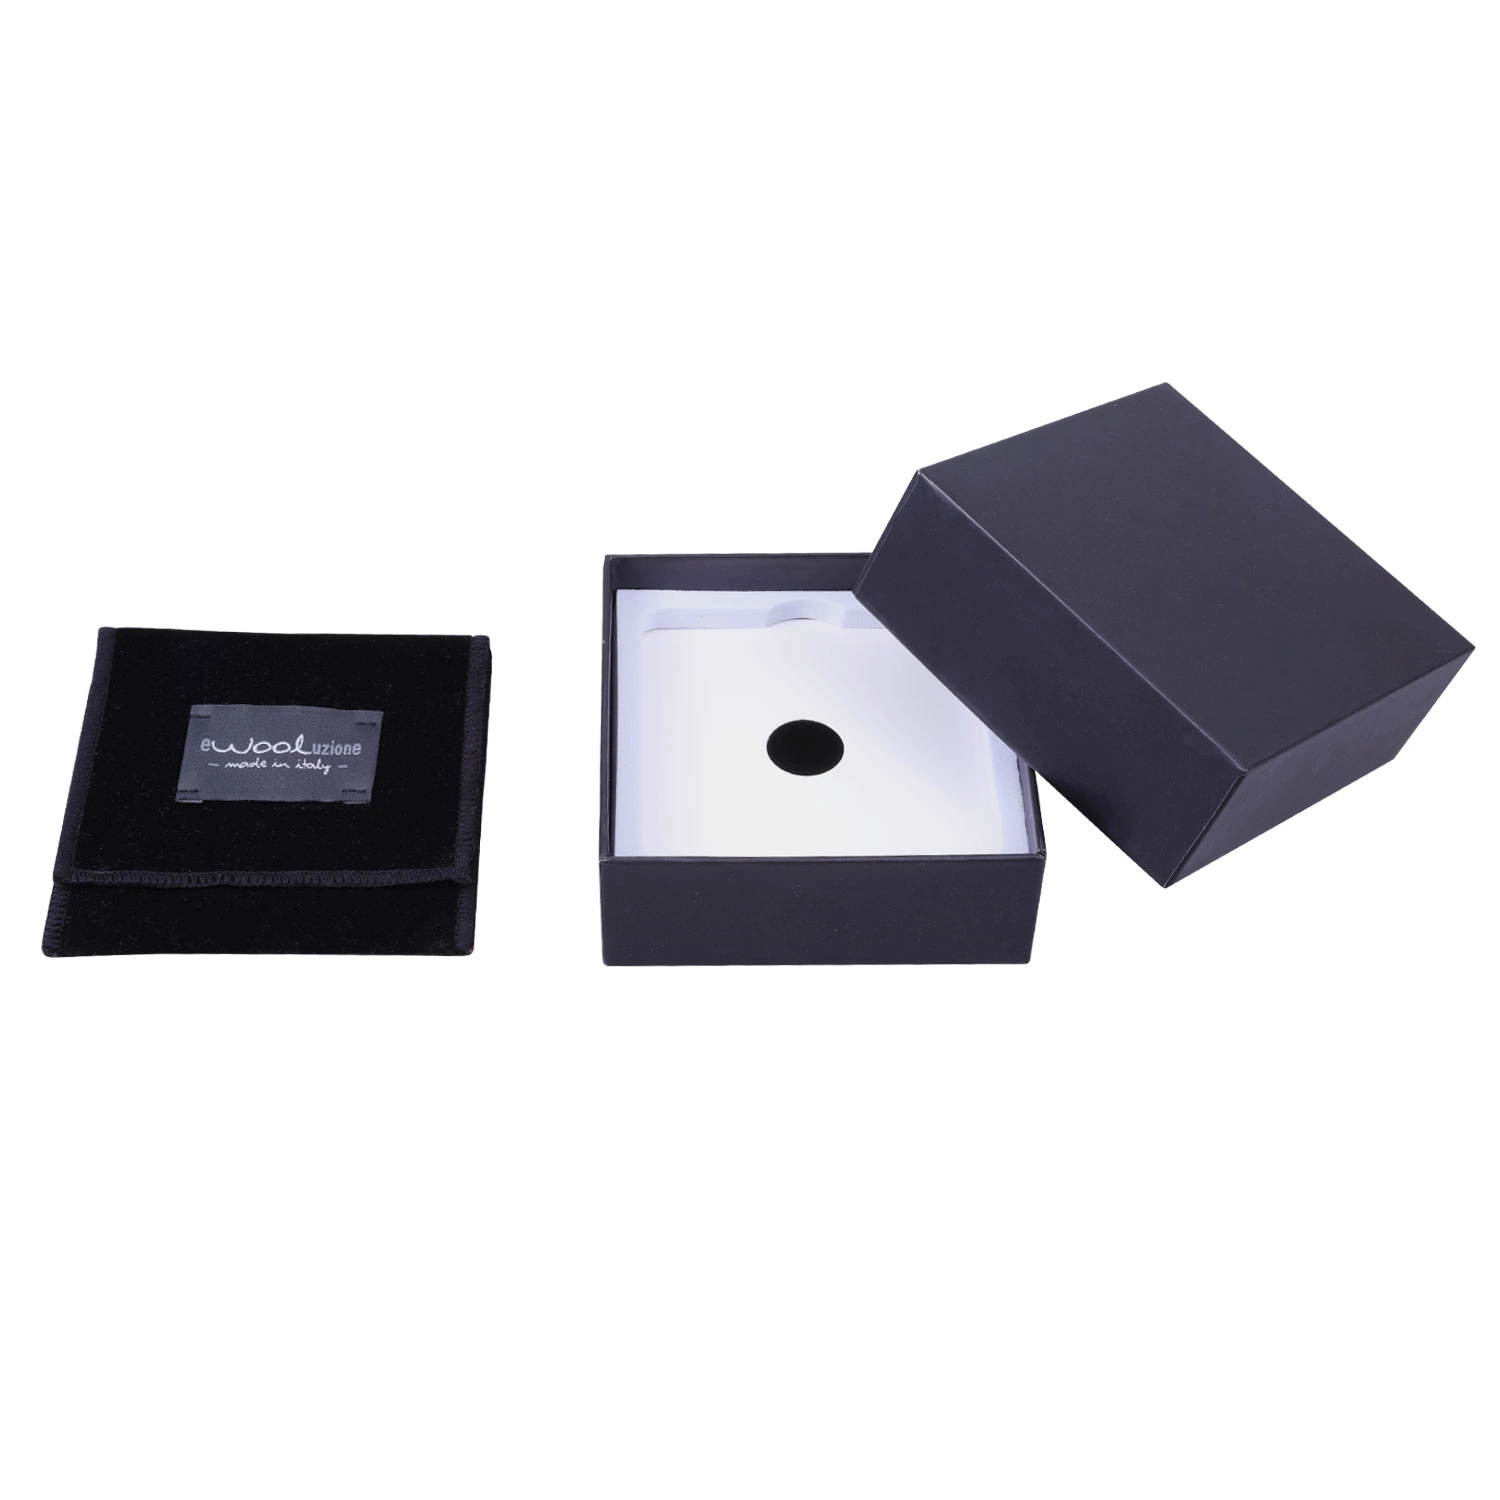 Nuevo diseño de cajas de papel Caja cosméticos Game Box Caja de regalo